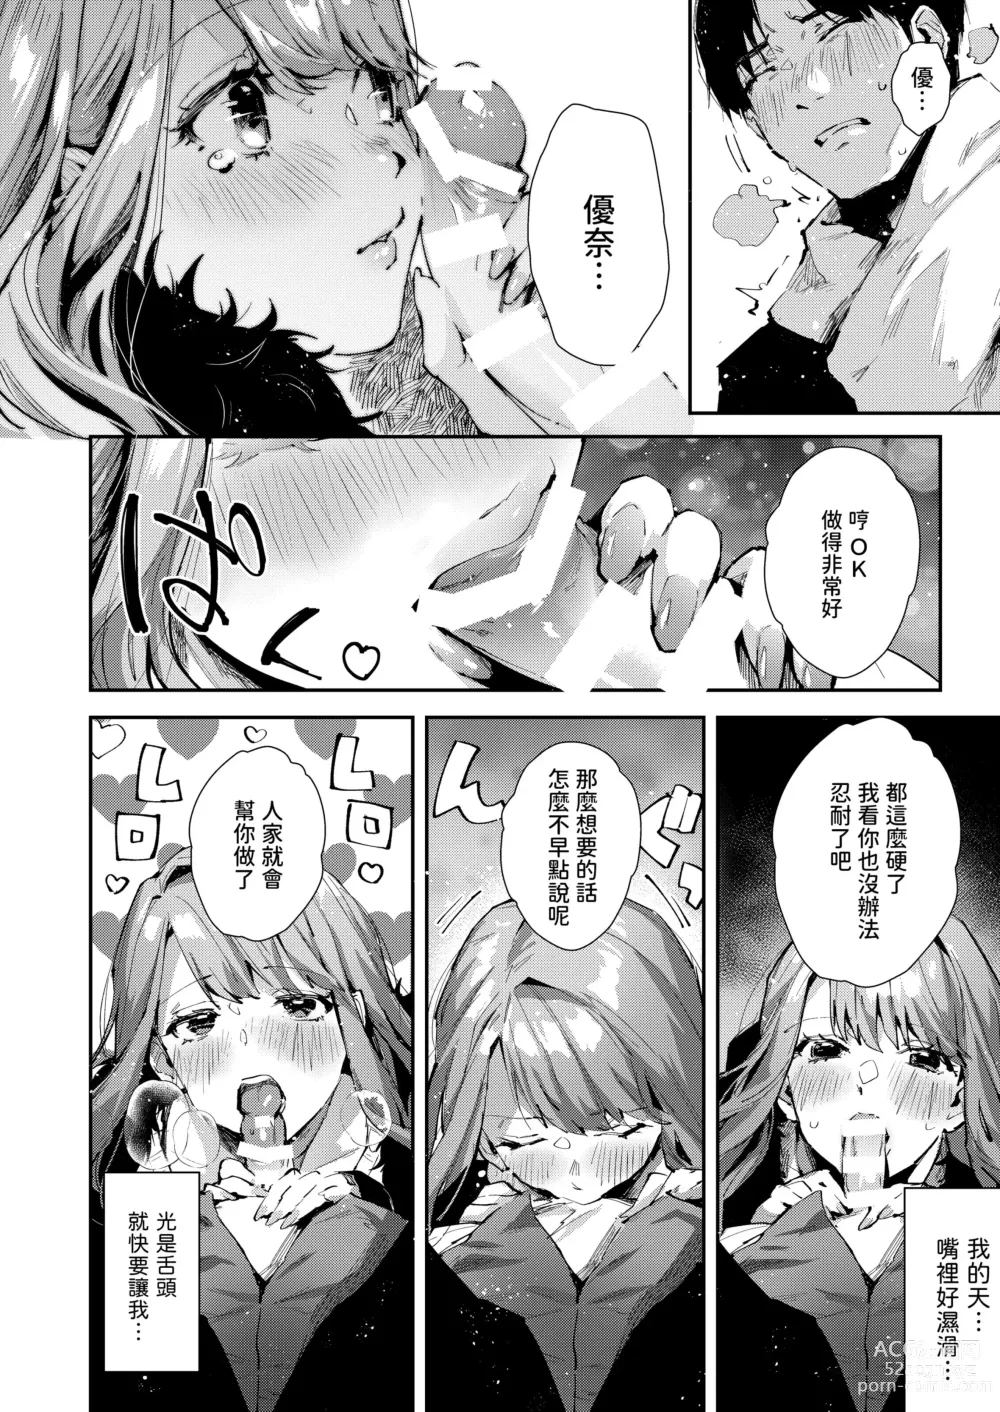 Page 7 of doujinshi Ore no Gal wa Koko ni Iru.